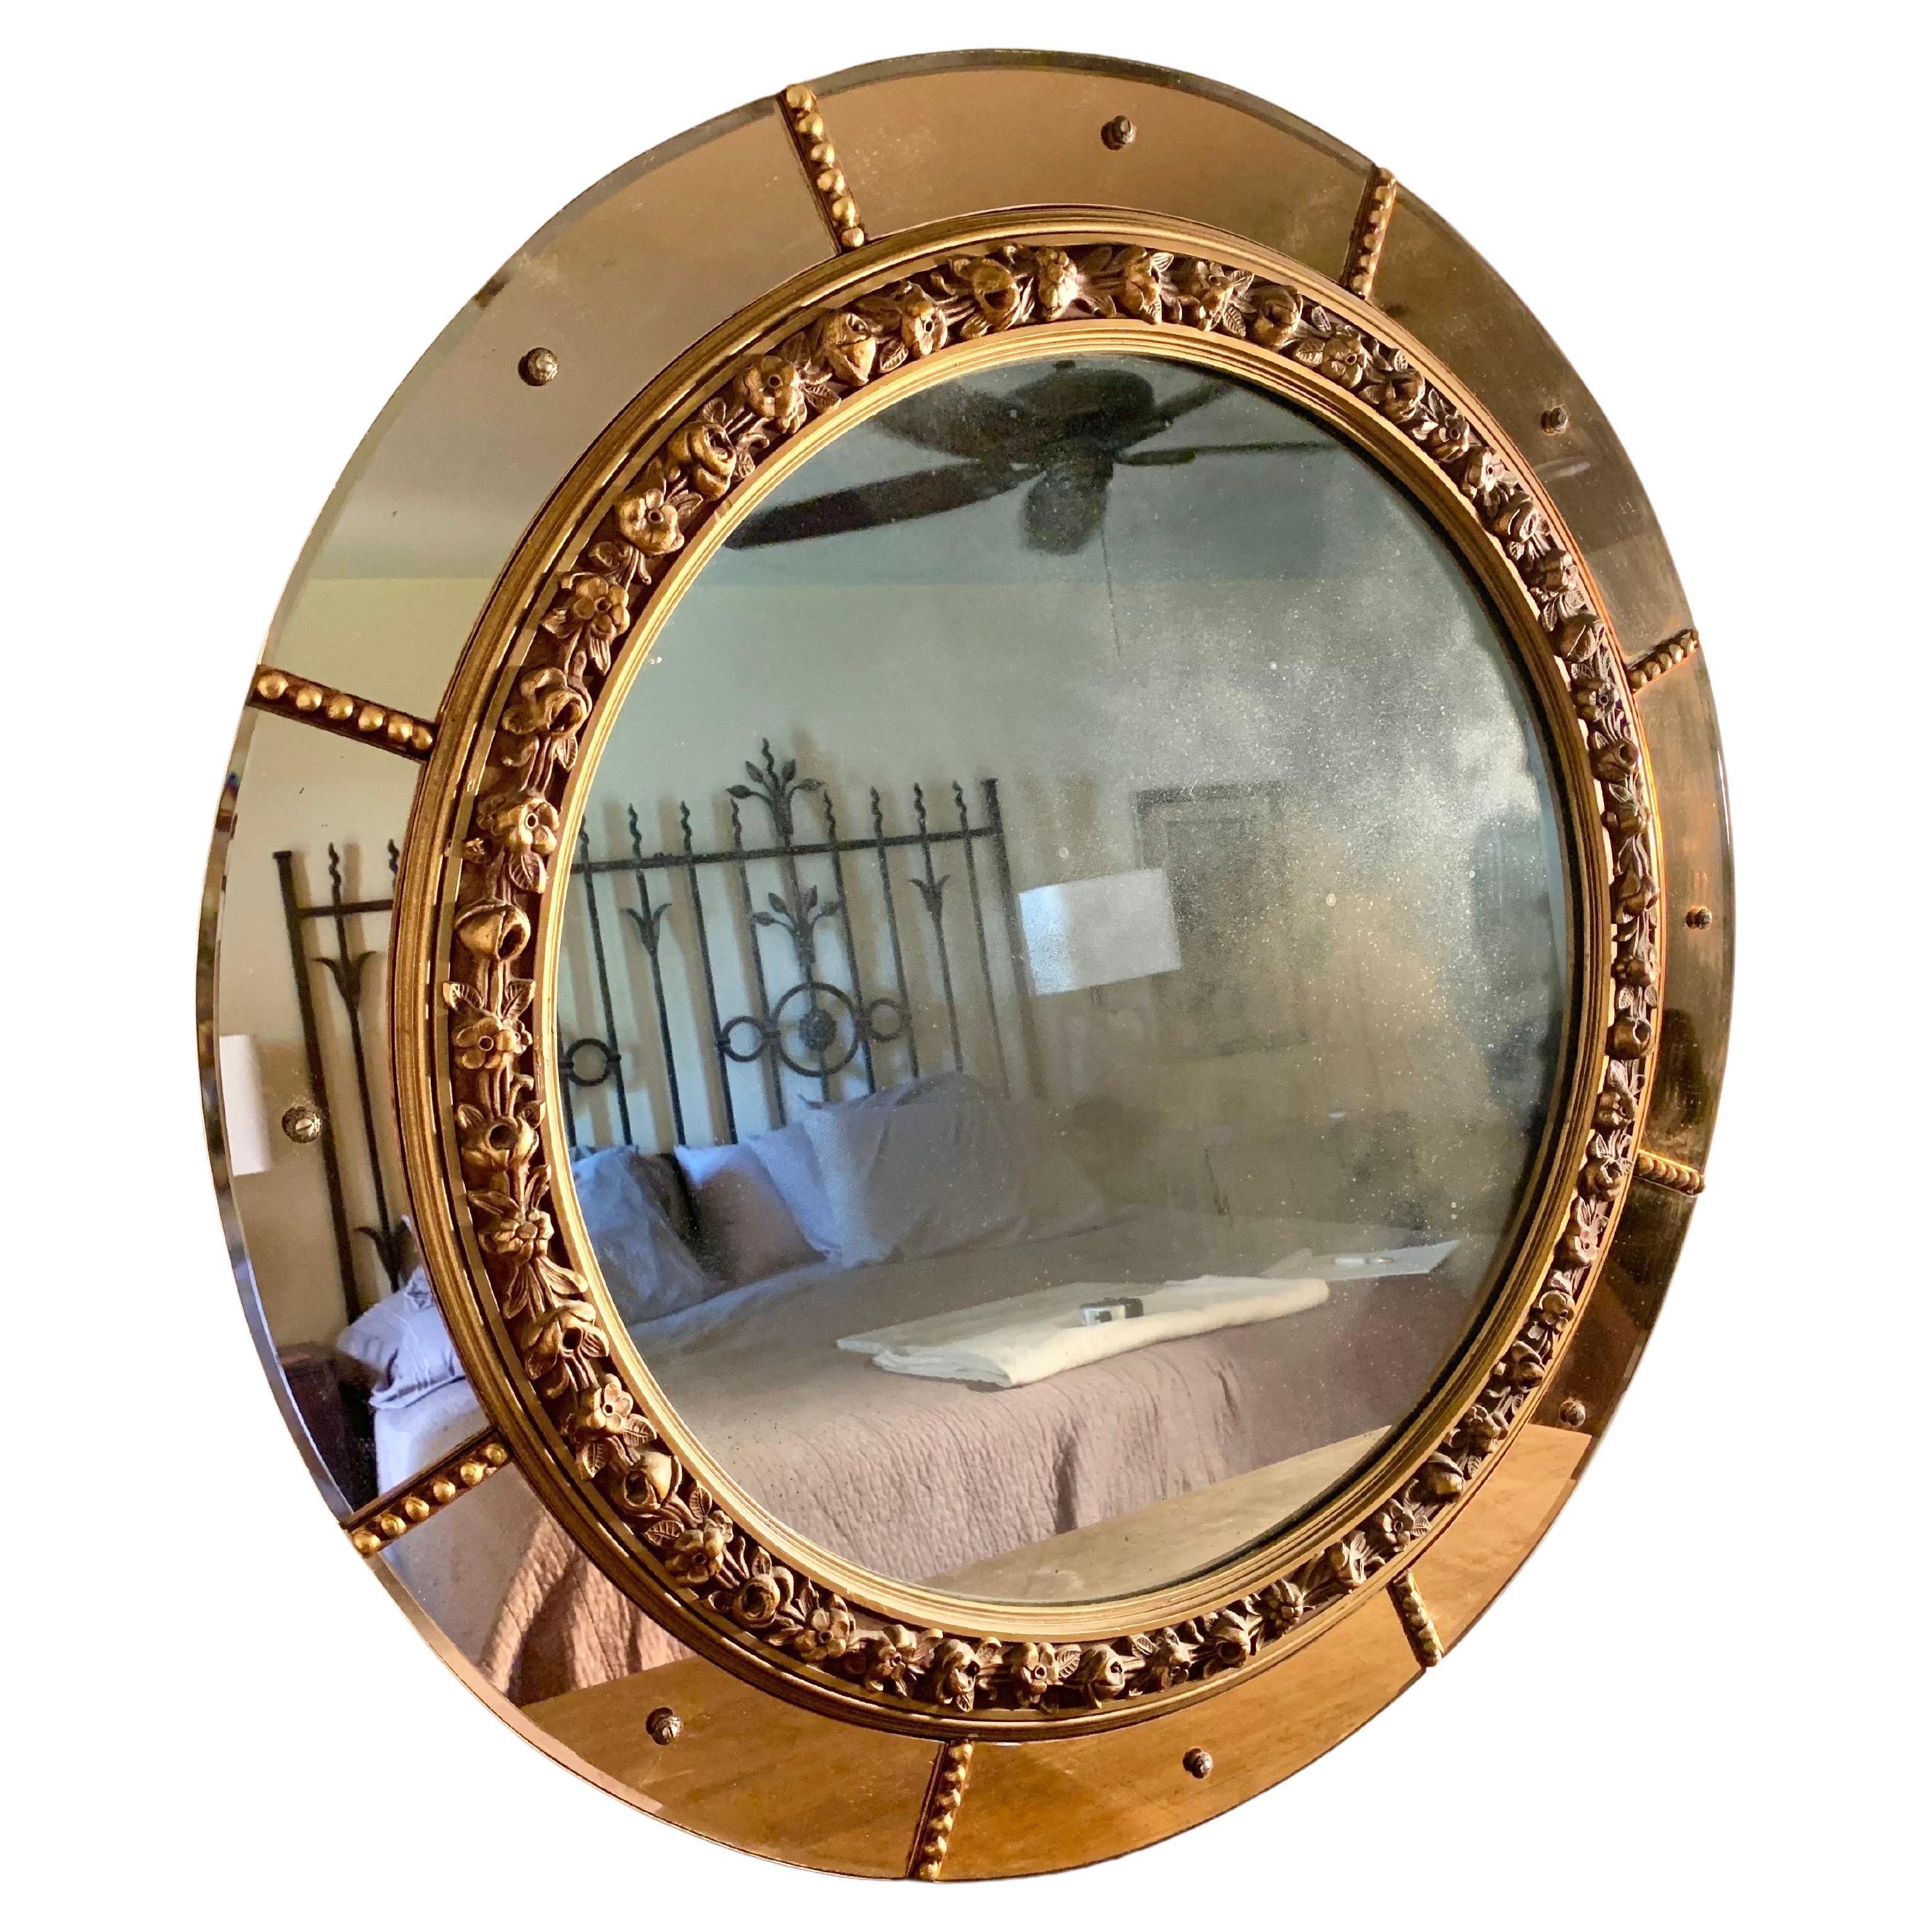 Dieser runde Wandspiegel aus dem frühen 20. Jahrhundert ist ein echtes Zeugnis des Art déco und zeigt einen runden Spiegel, der von einem goldenen Blumenmuster umgeben ist. Der äußere Rand des Spiegels ist von acht rosa oder rosafarbenen